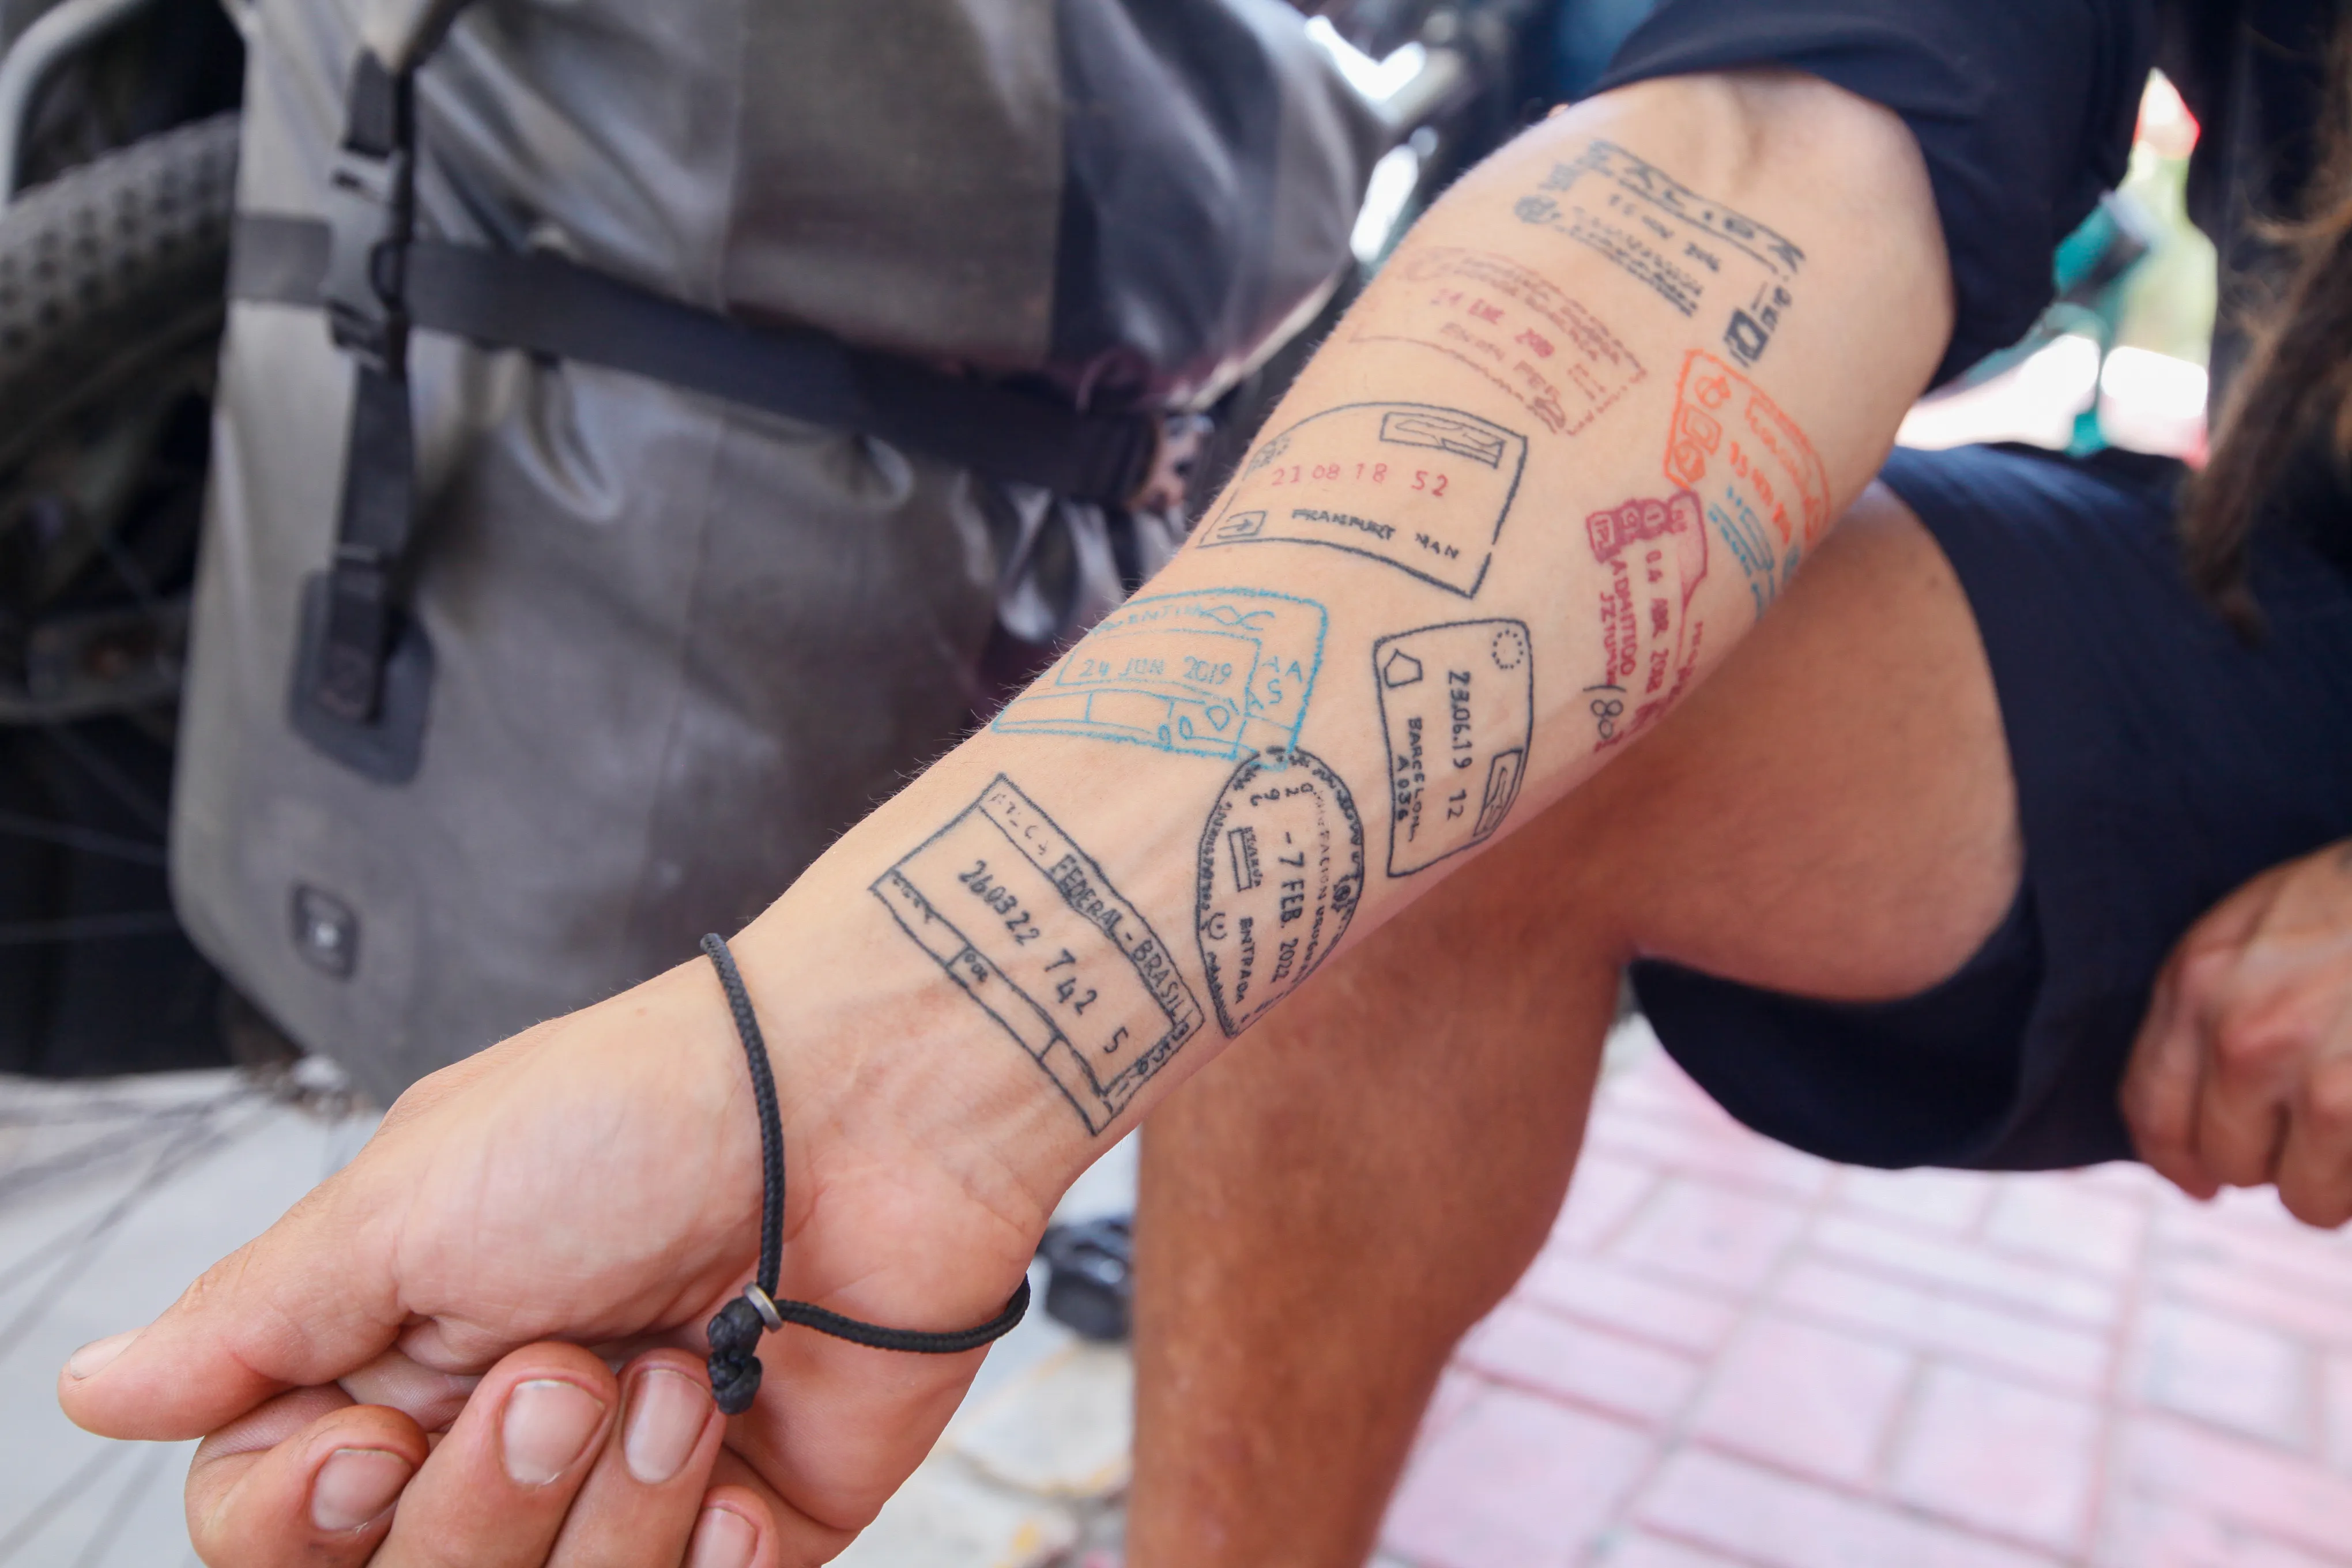 Seu braço virou seu passaporte. Ele decidiu eternizar com uma tatuagem os países por onde já passou, para sempre recordar